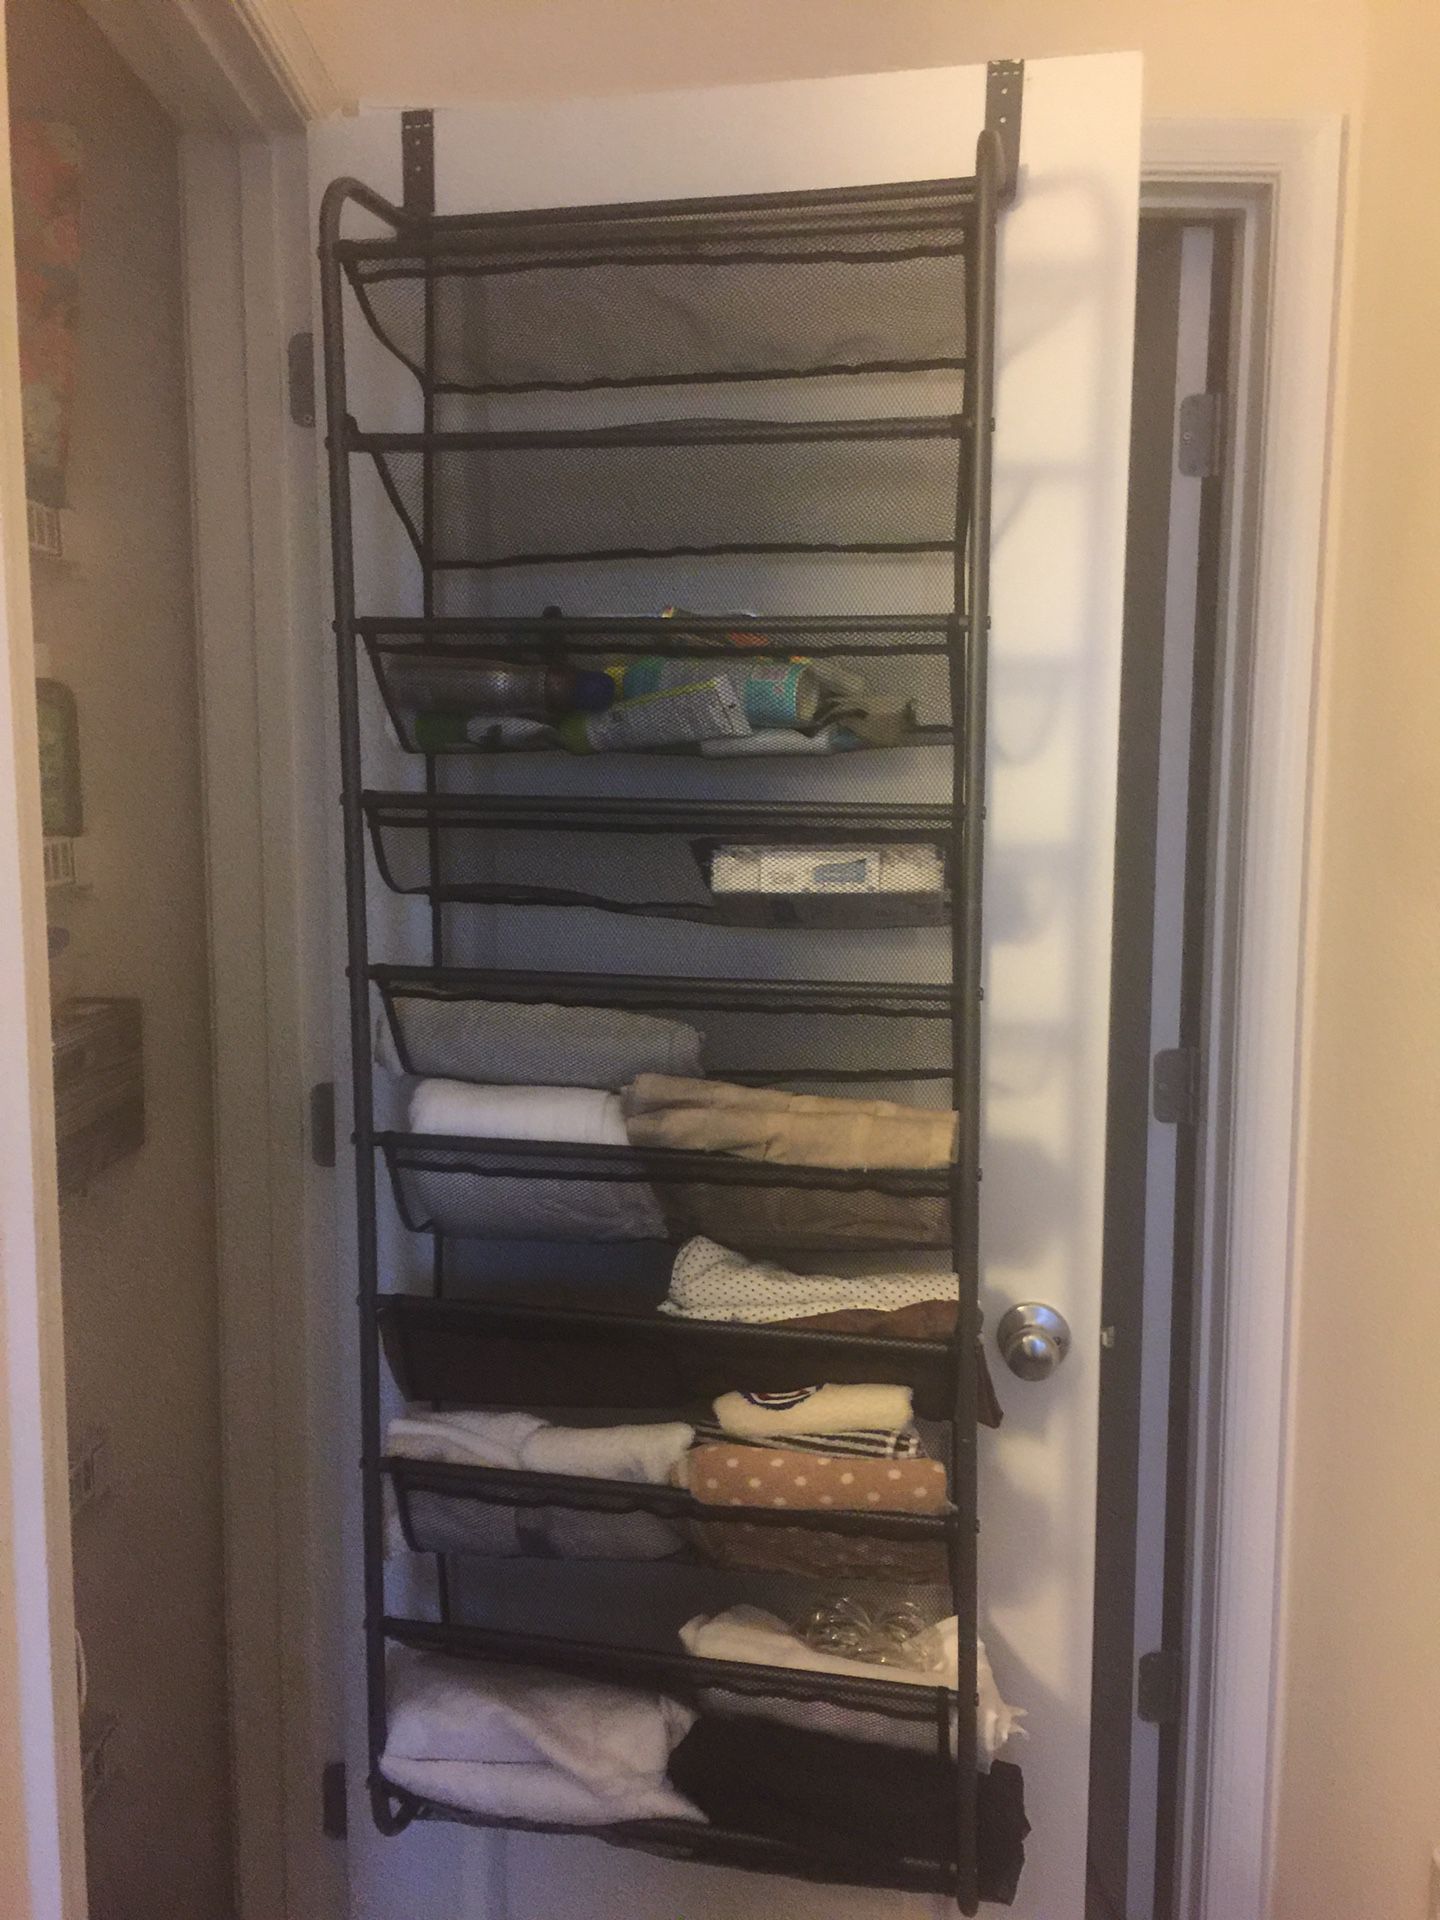 Over the door shoe rack/storage